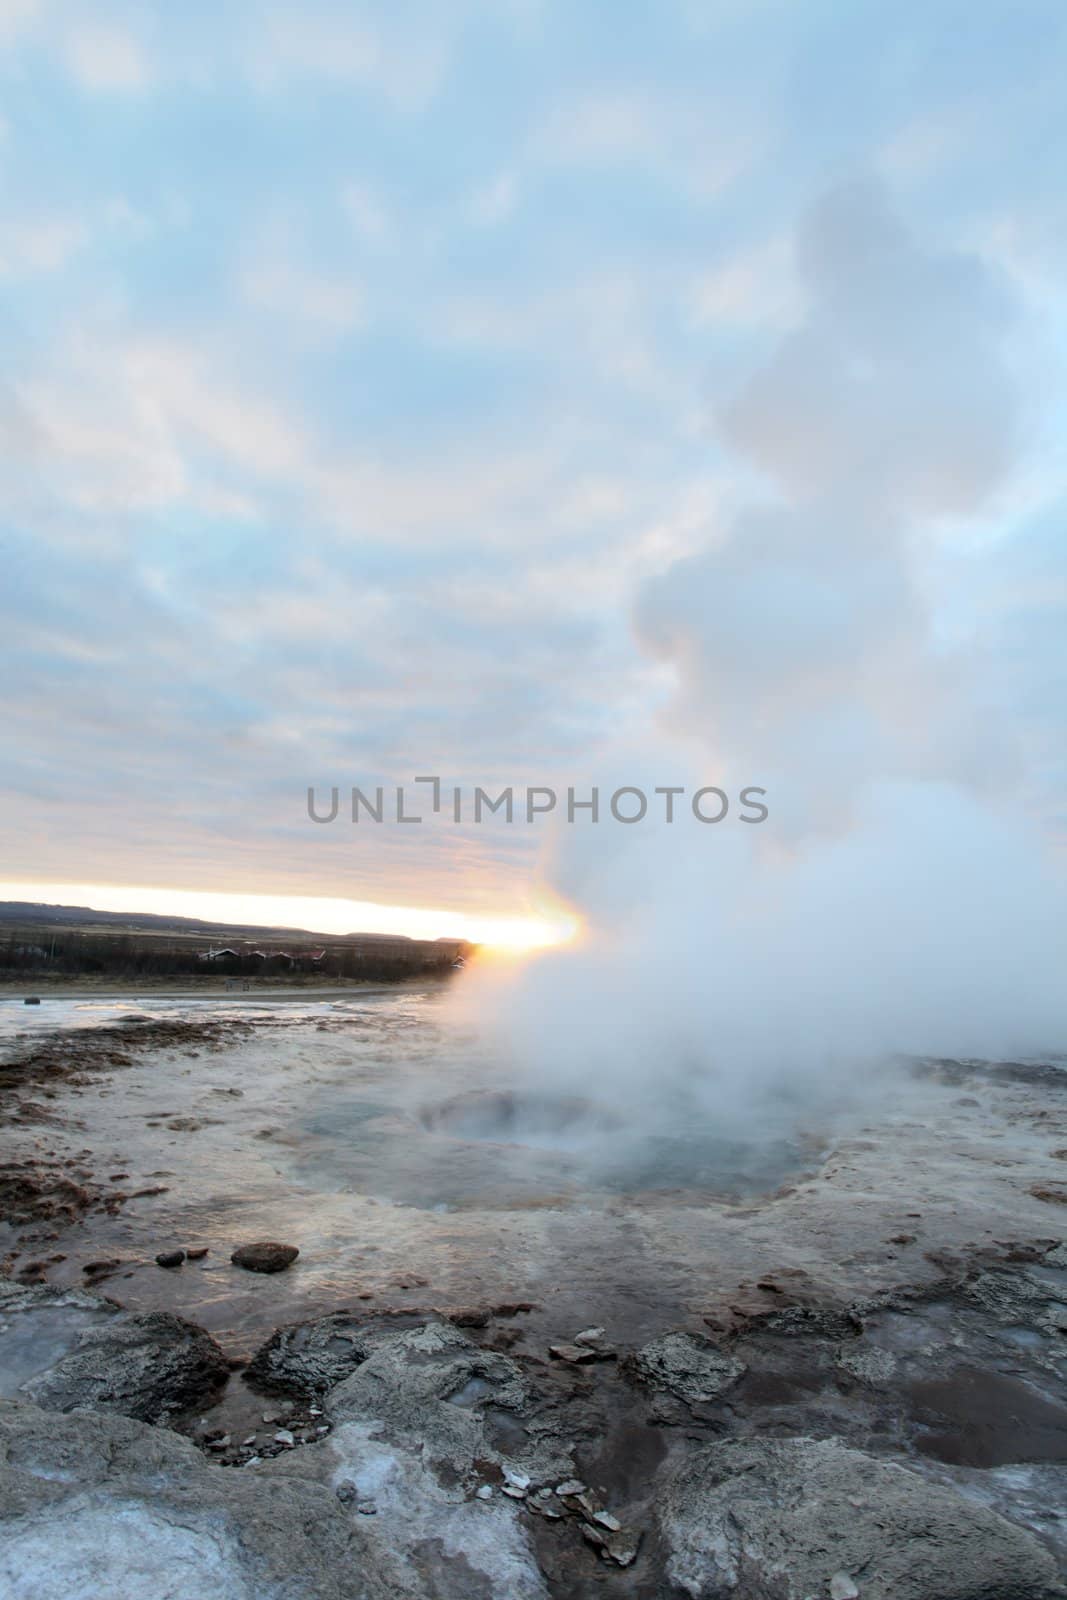 Strokkur Geyser in Iceland erupting at sunset in winter